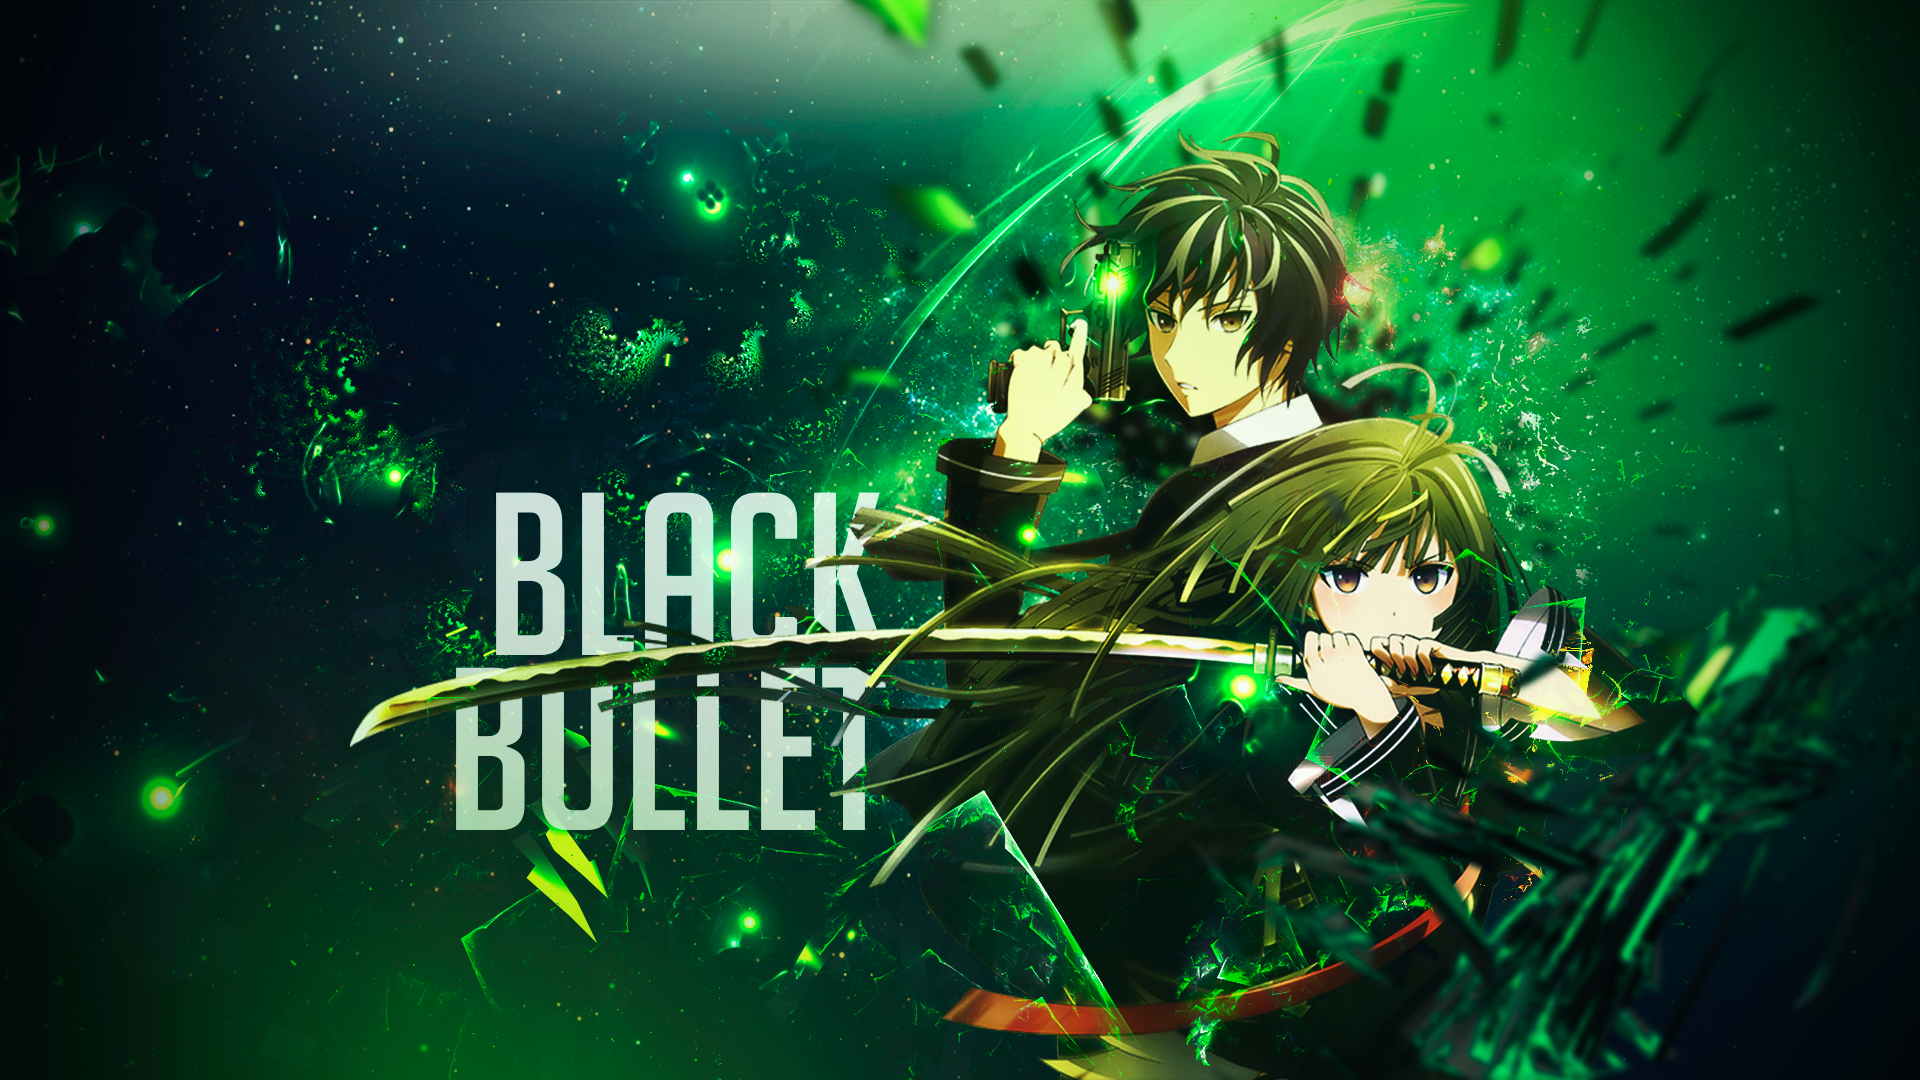 Black Bullet Anime Pistol Sword 1920x1080